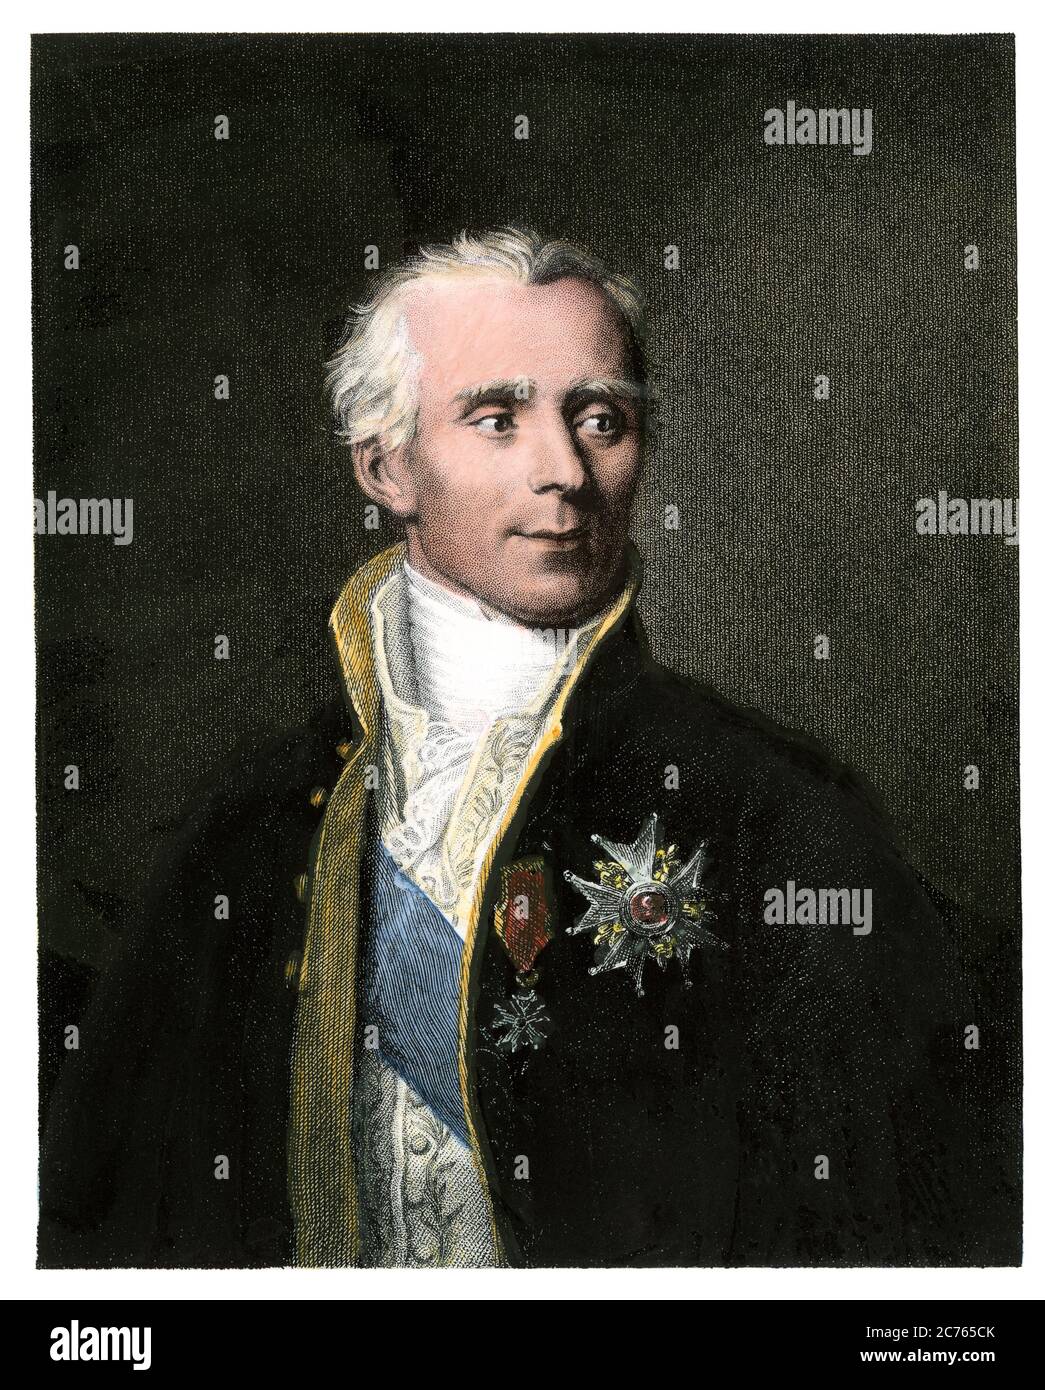 Pierre-Simon, marqués de Laplace, matemático francés. Grabado de acero de color manual Foto de stock